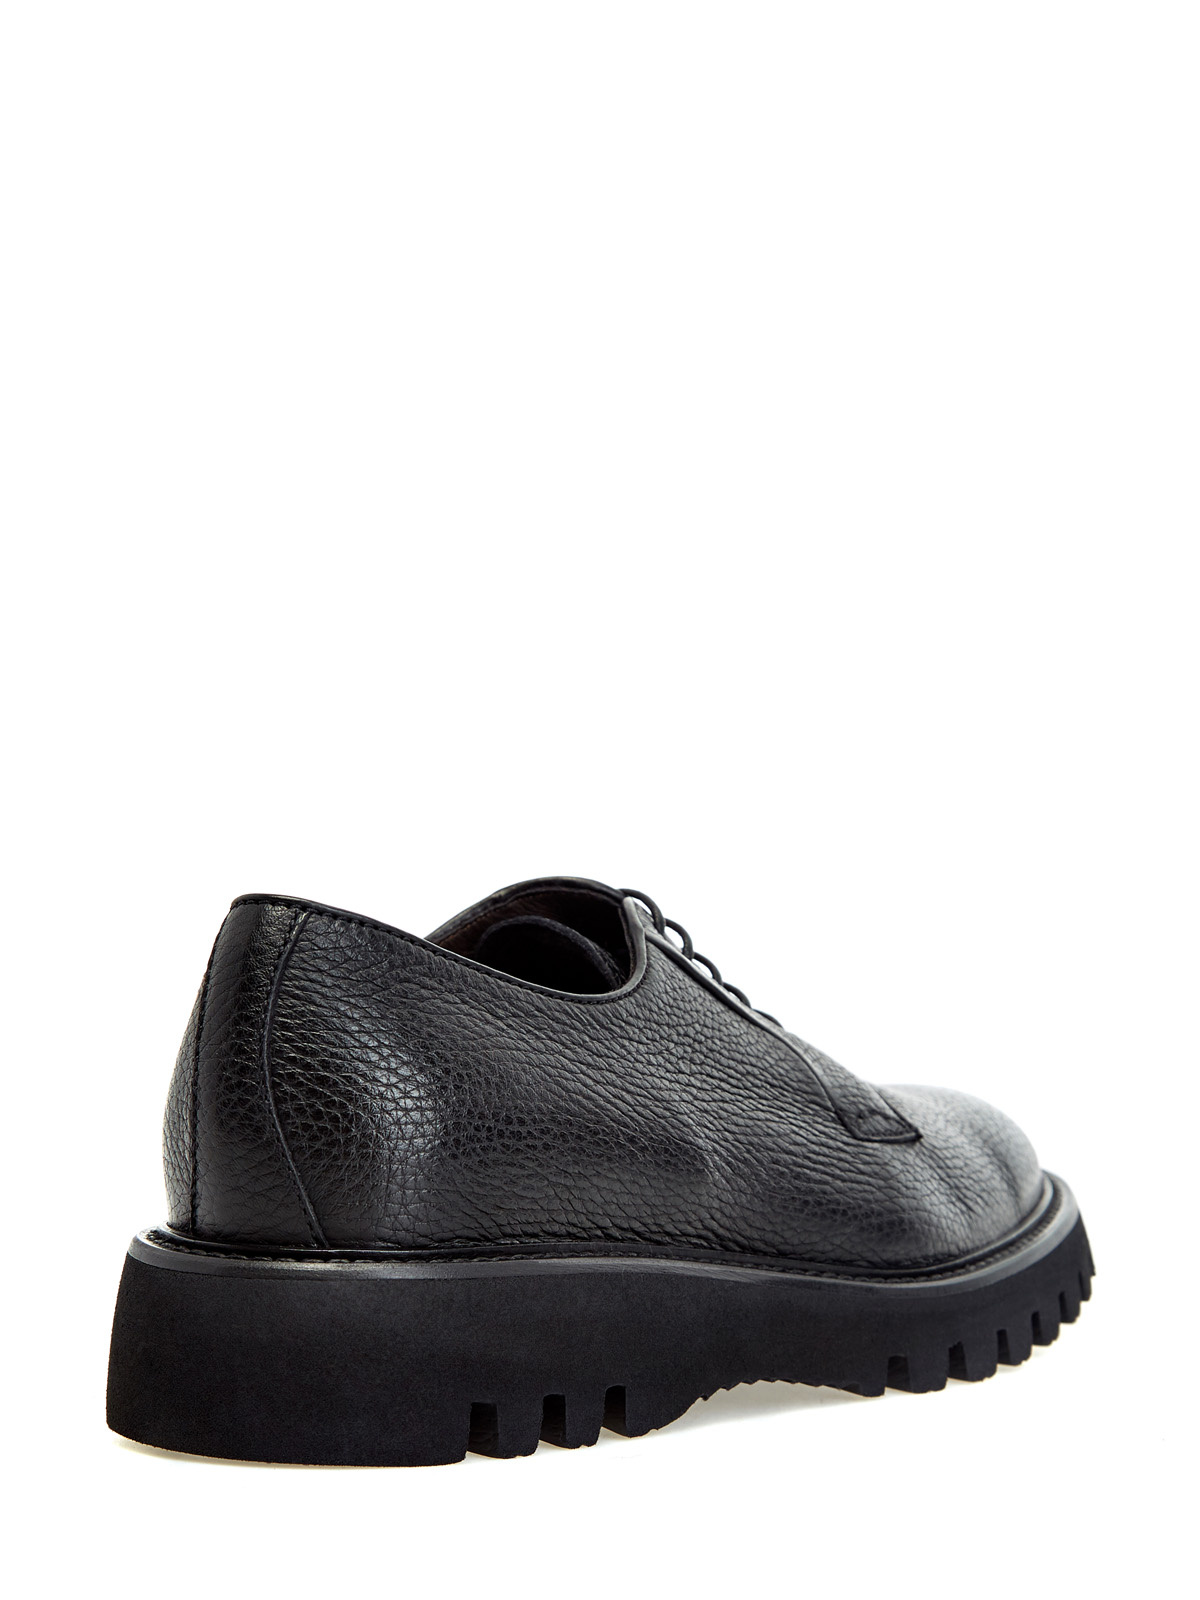 Кожаные ботинки-дерби на массивной подошве BARRETT, цвет черный, размер 40.5;41;41.5;42.5;43;43.5;44;45 - фото 3